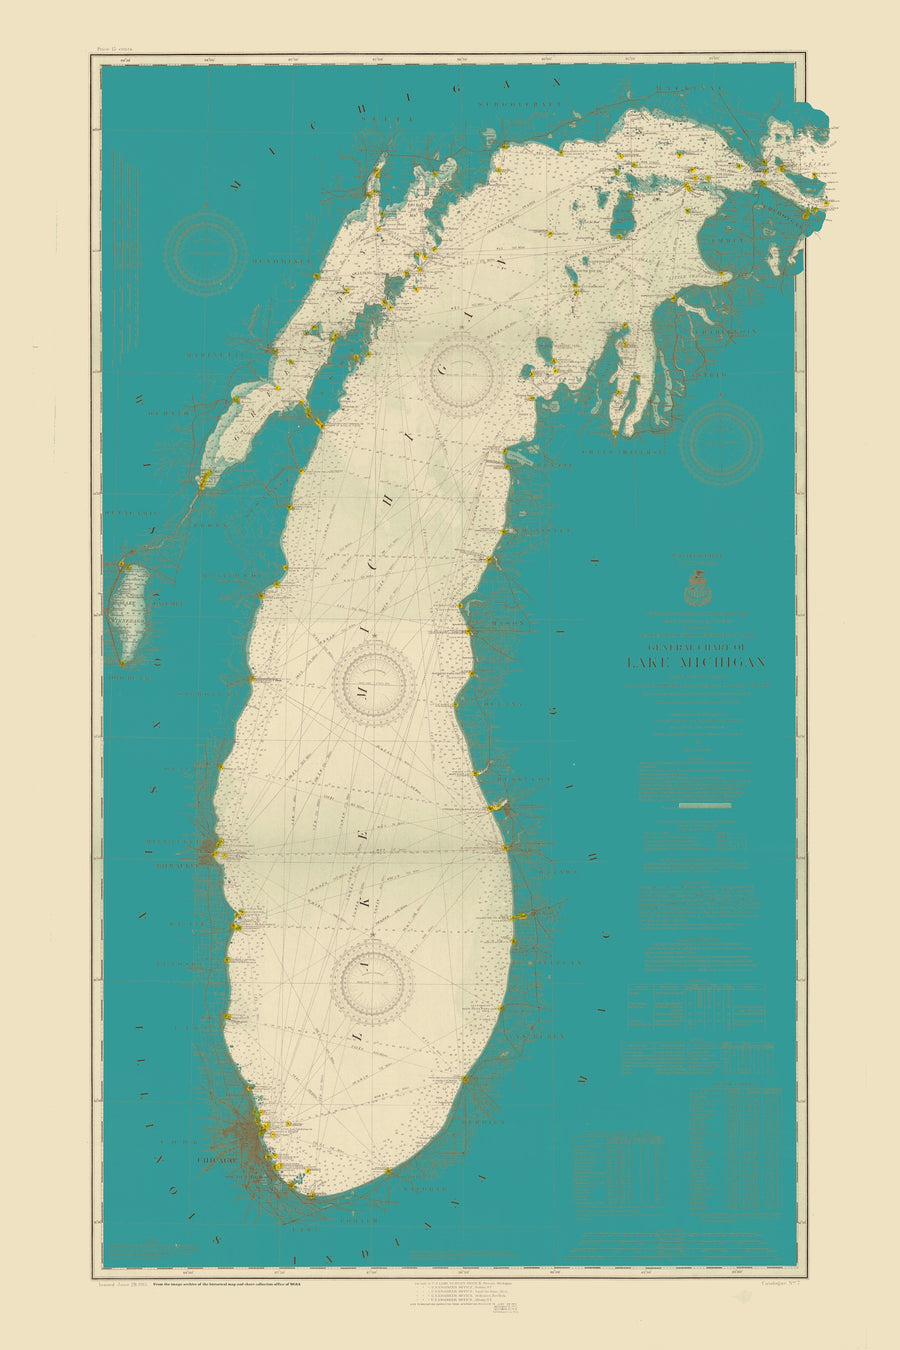 Lake Michigan Map (Teal) - 1909